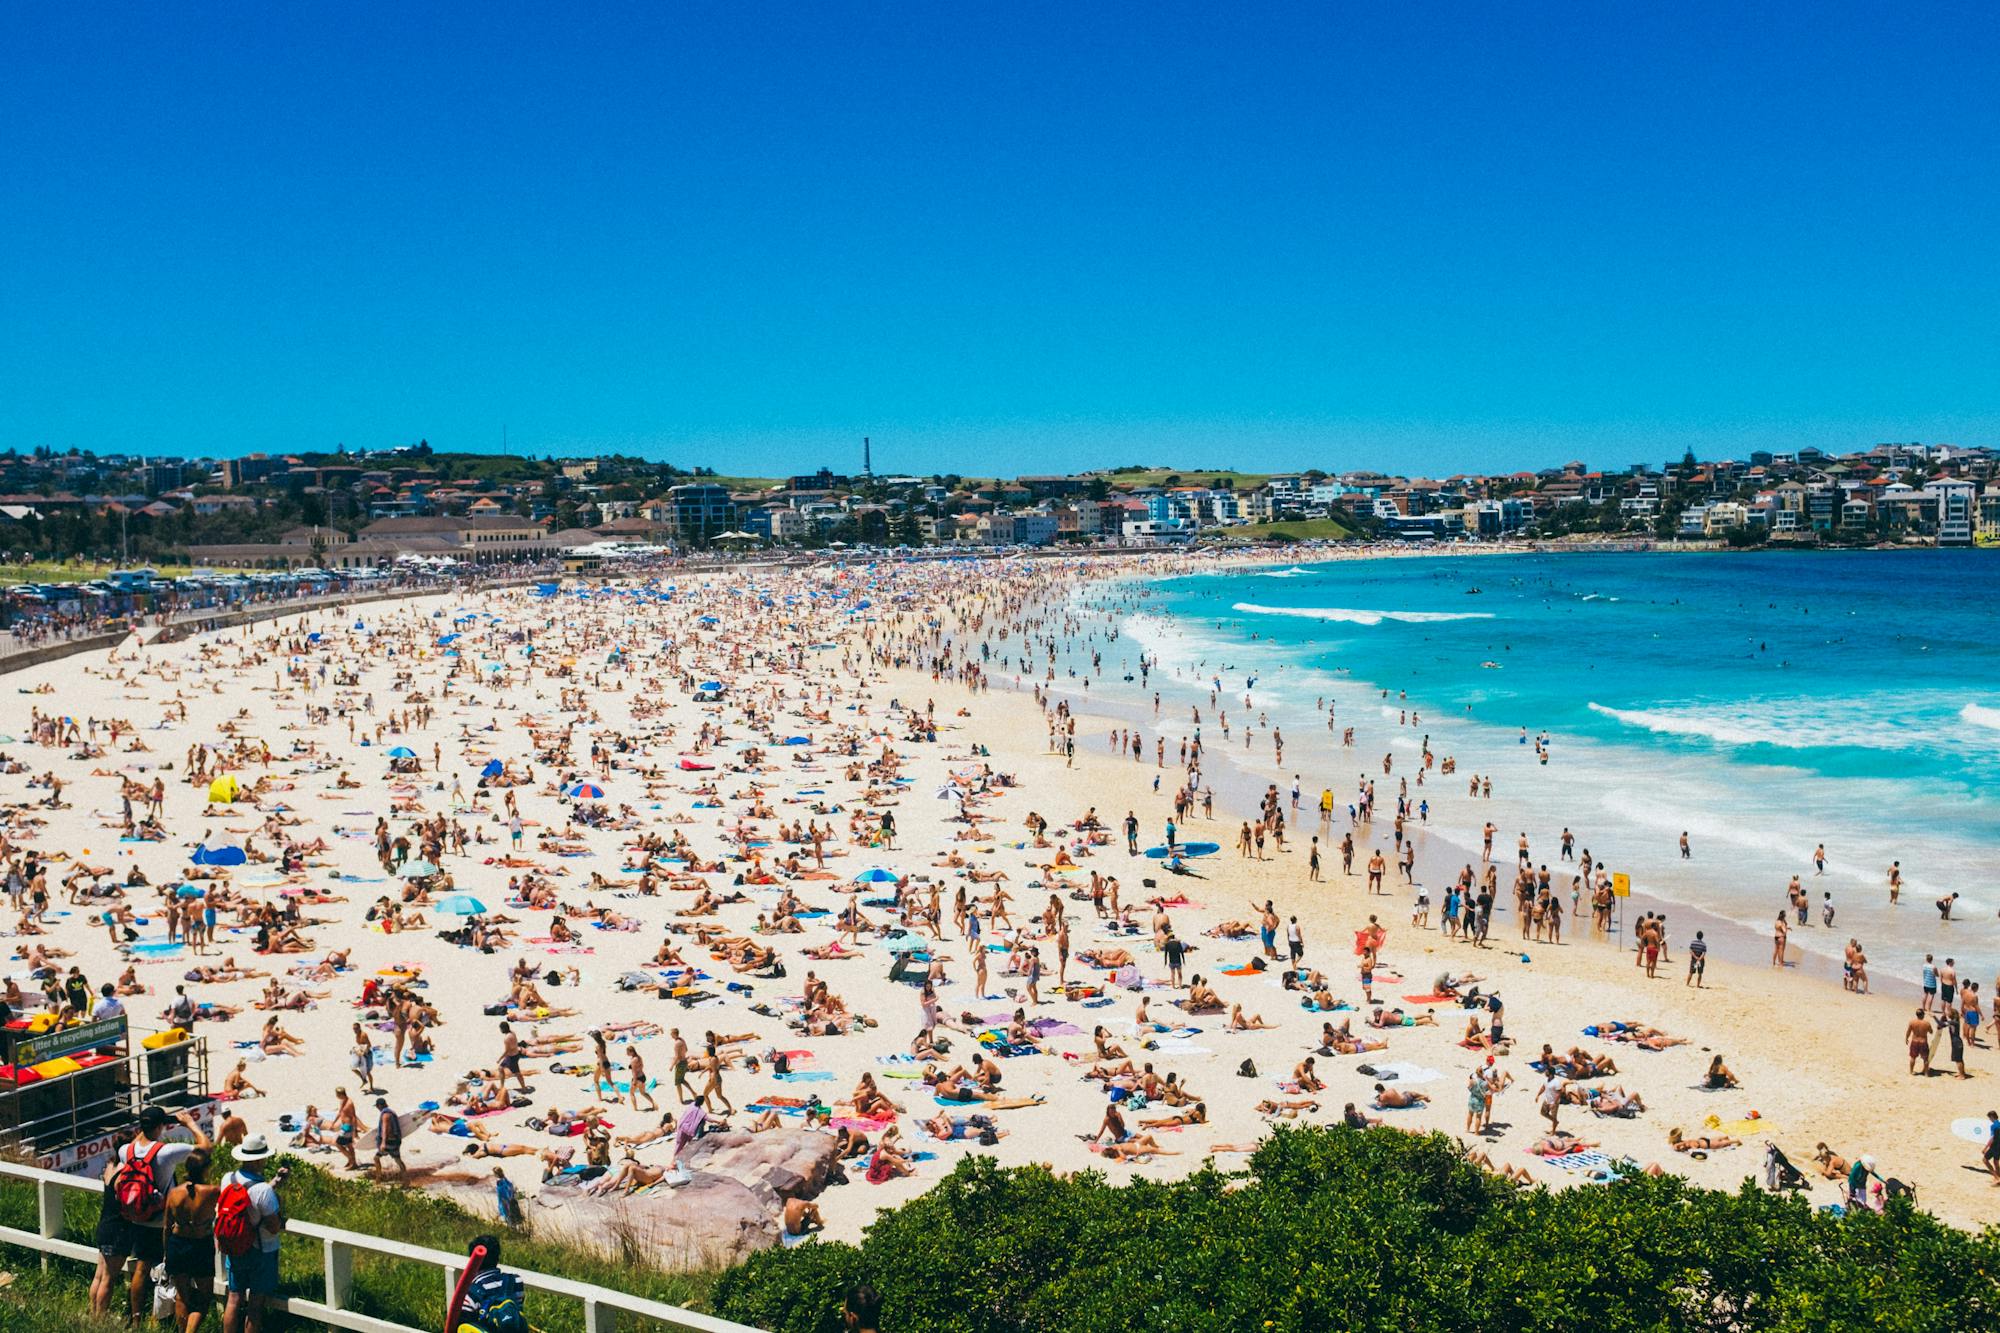 Blick auf den Bondi Beach mit Tausenden von Menschen, welche am Strand liegen und im Meer baden. 